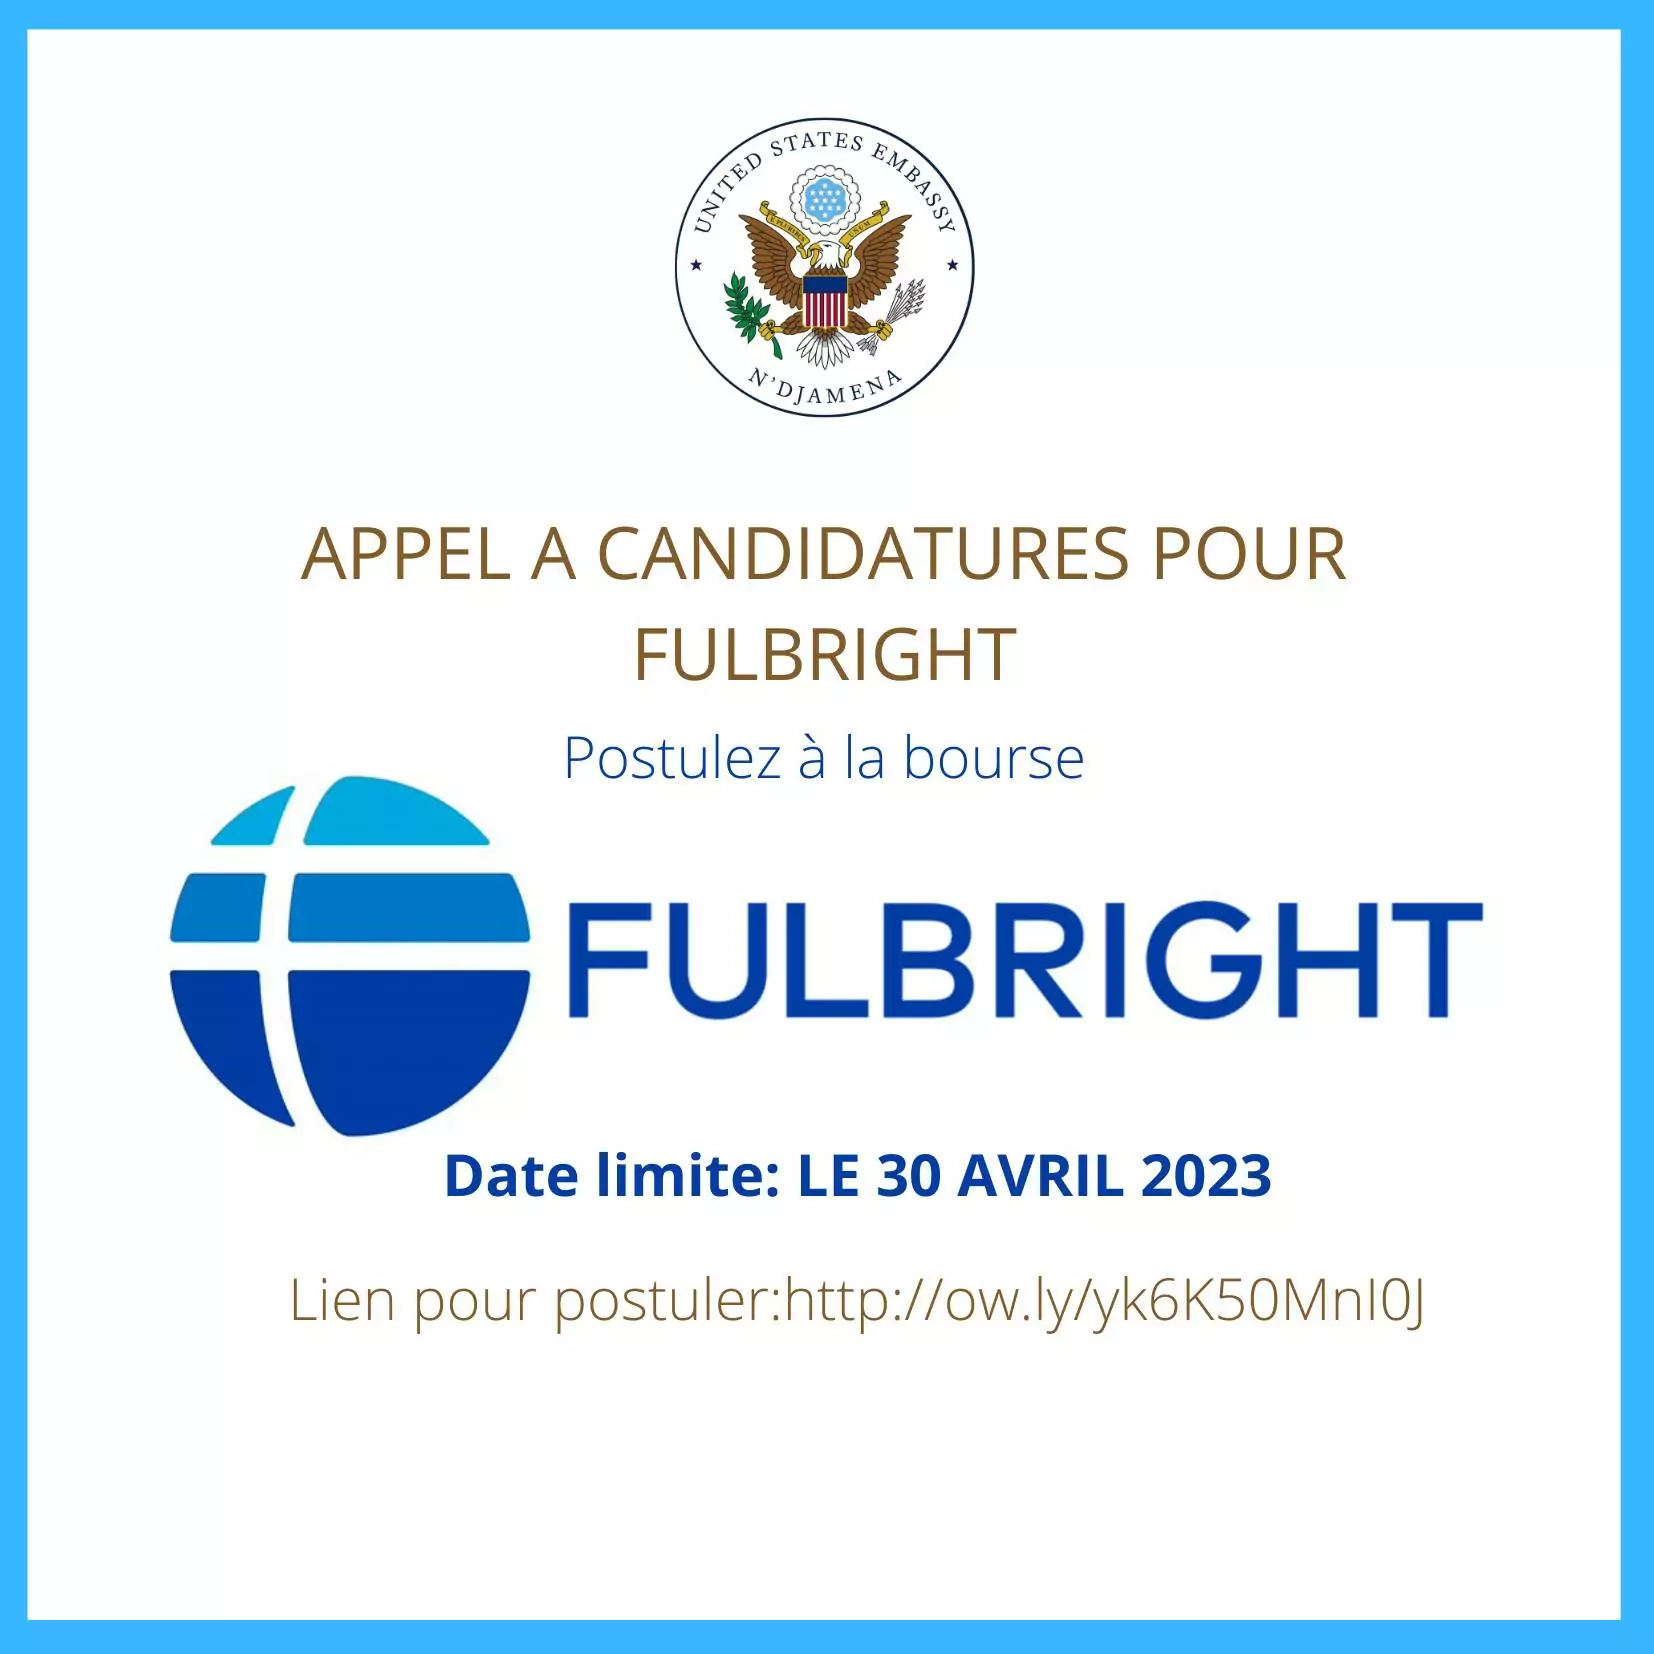 Appel à candidatures pour Fulbright pour les étudiants(es) qui désirent étudier aux Etats-Unis